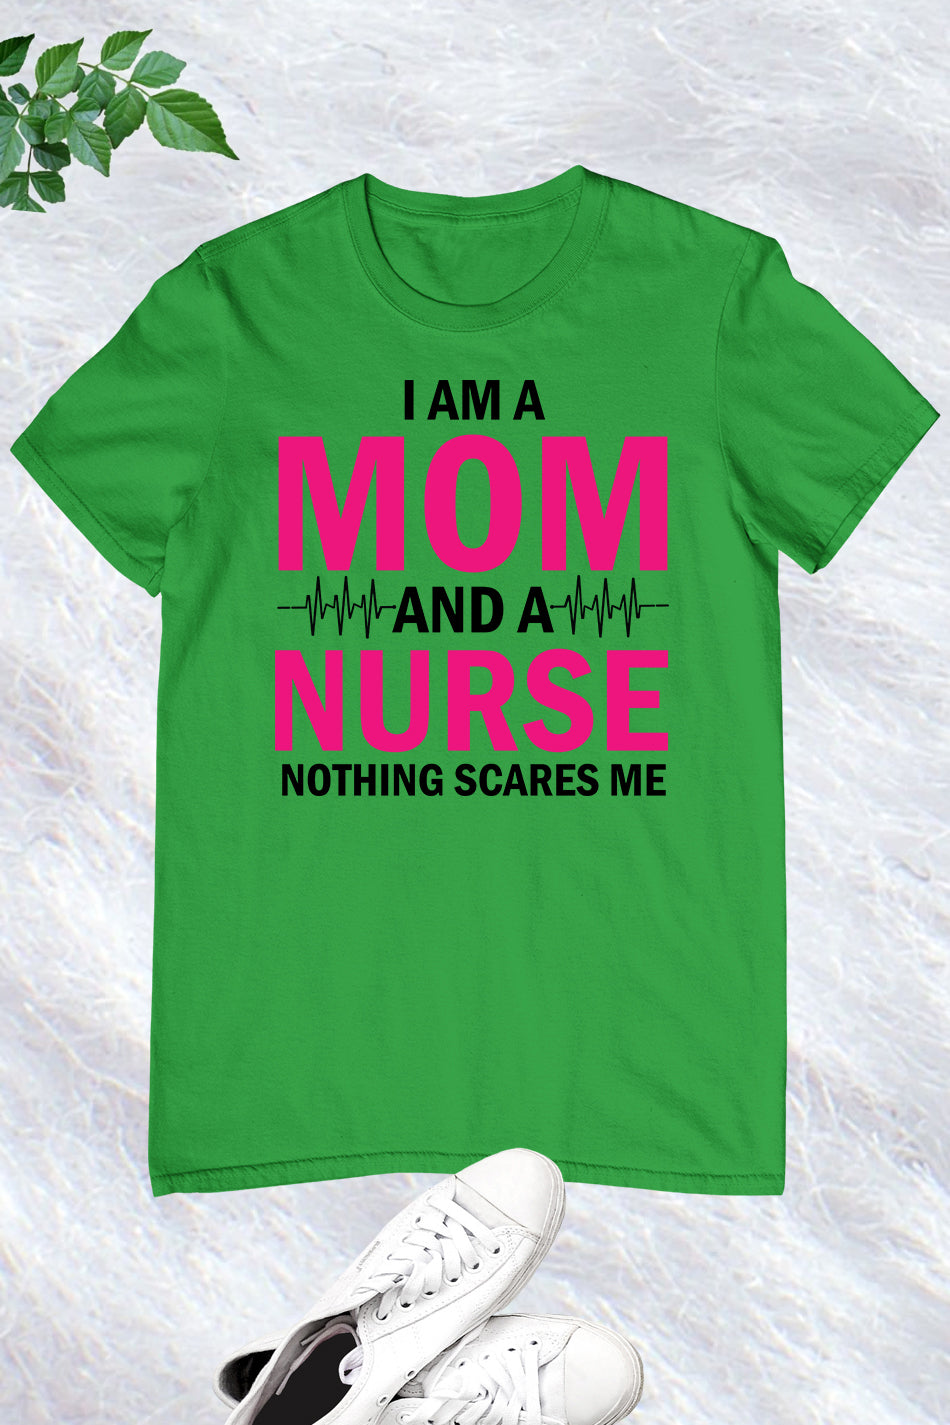 I am a Mom and Nurse Shirt